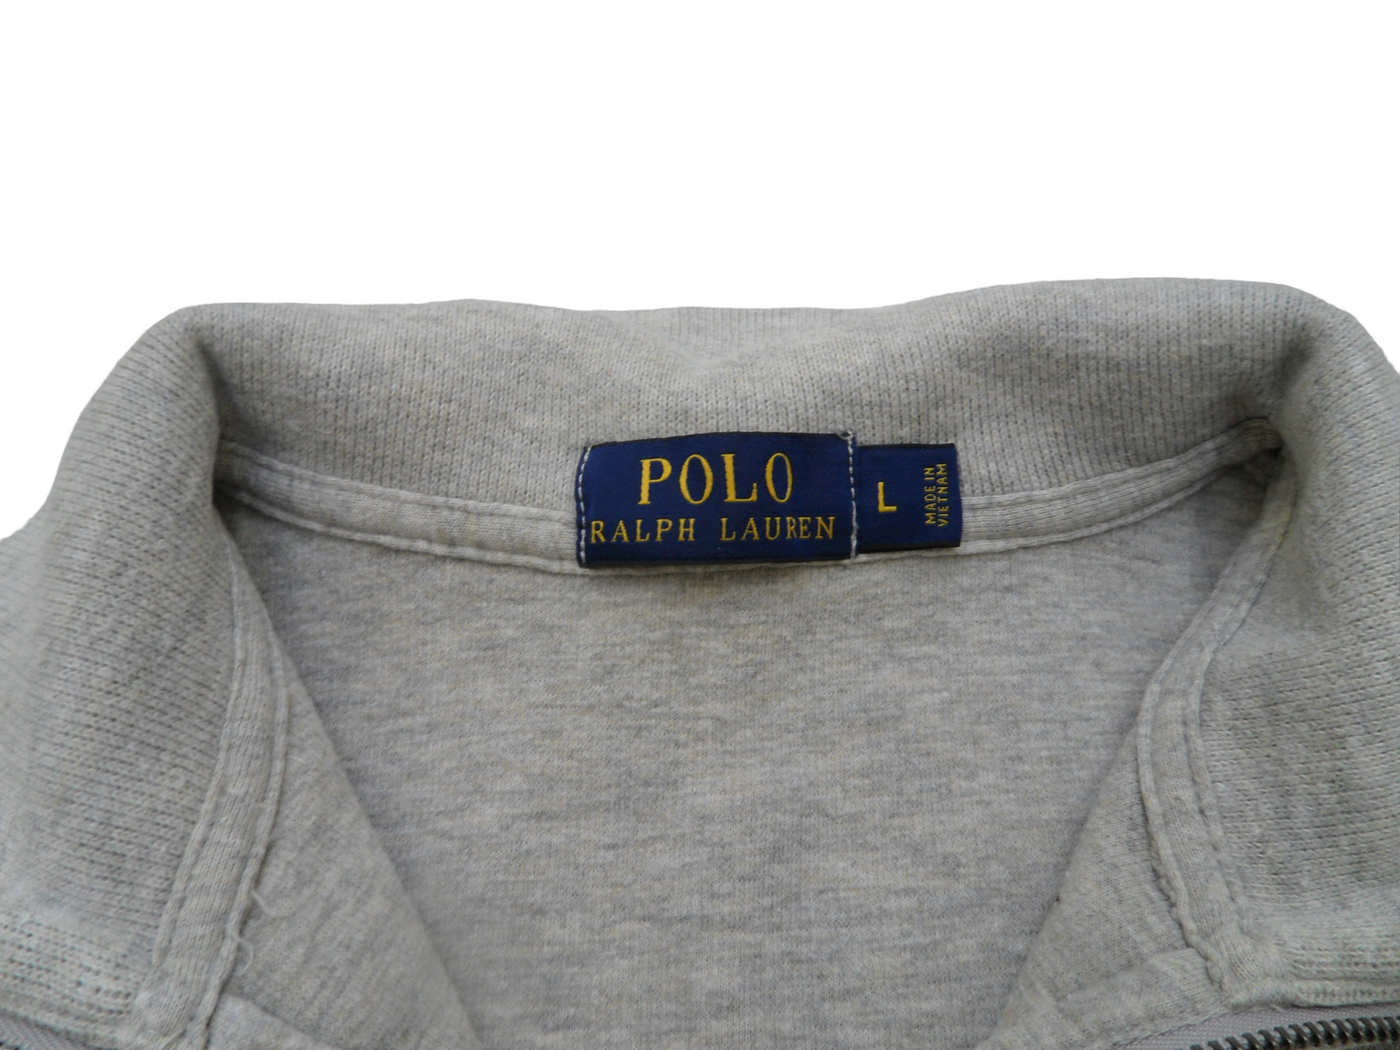 Vintage Polo Ralph Lauren Grey 100% Cotton Quarter Zip Pullover Size - L